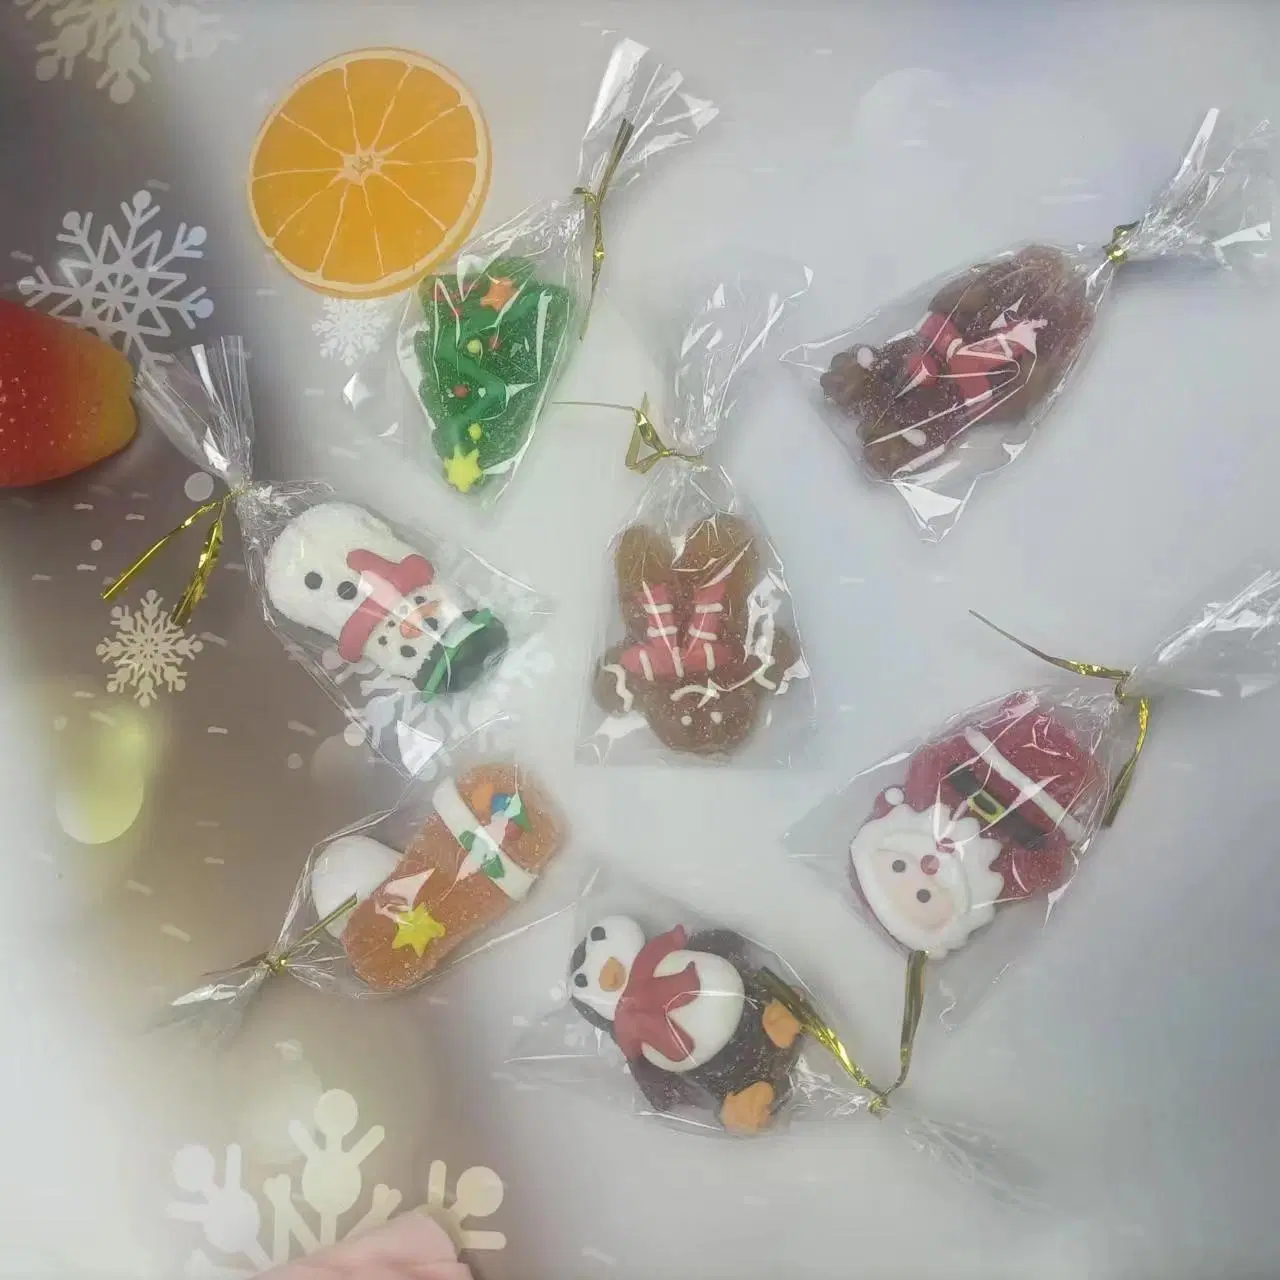 نكهات الفاكهة المختلطة هلام بوبص الحلوى اللذيذة إلى حلوى عيد الميلاد